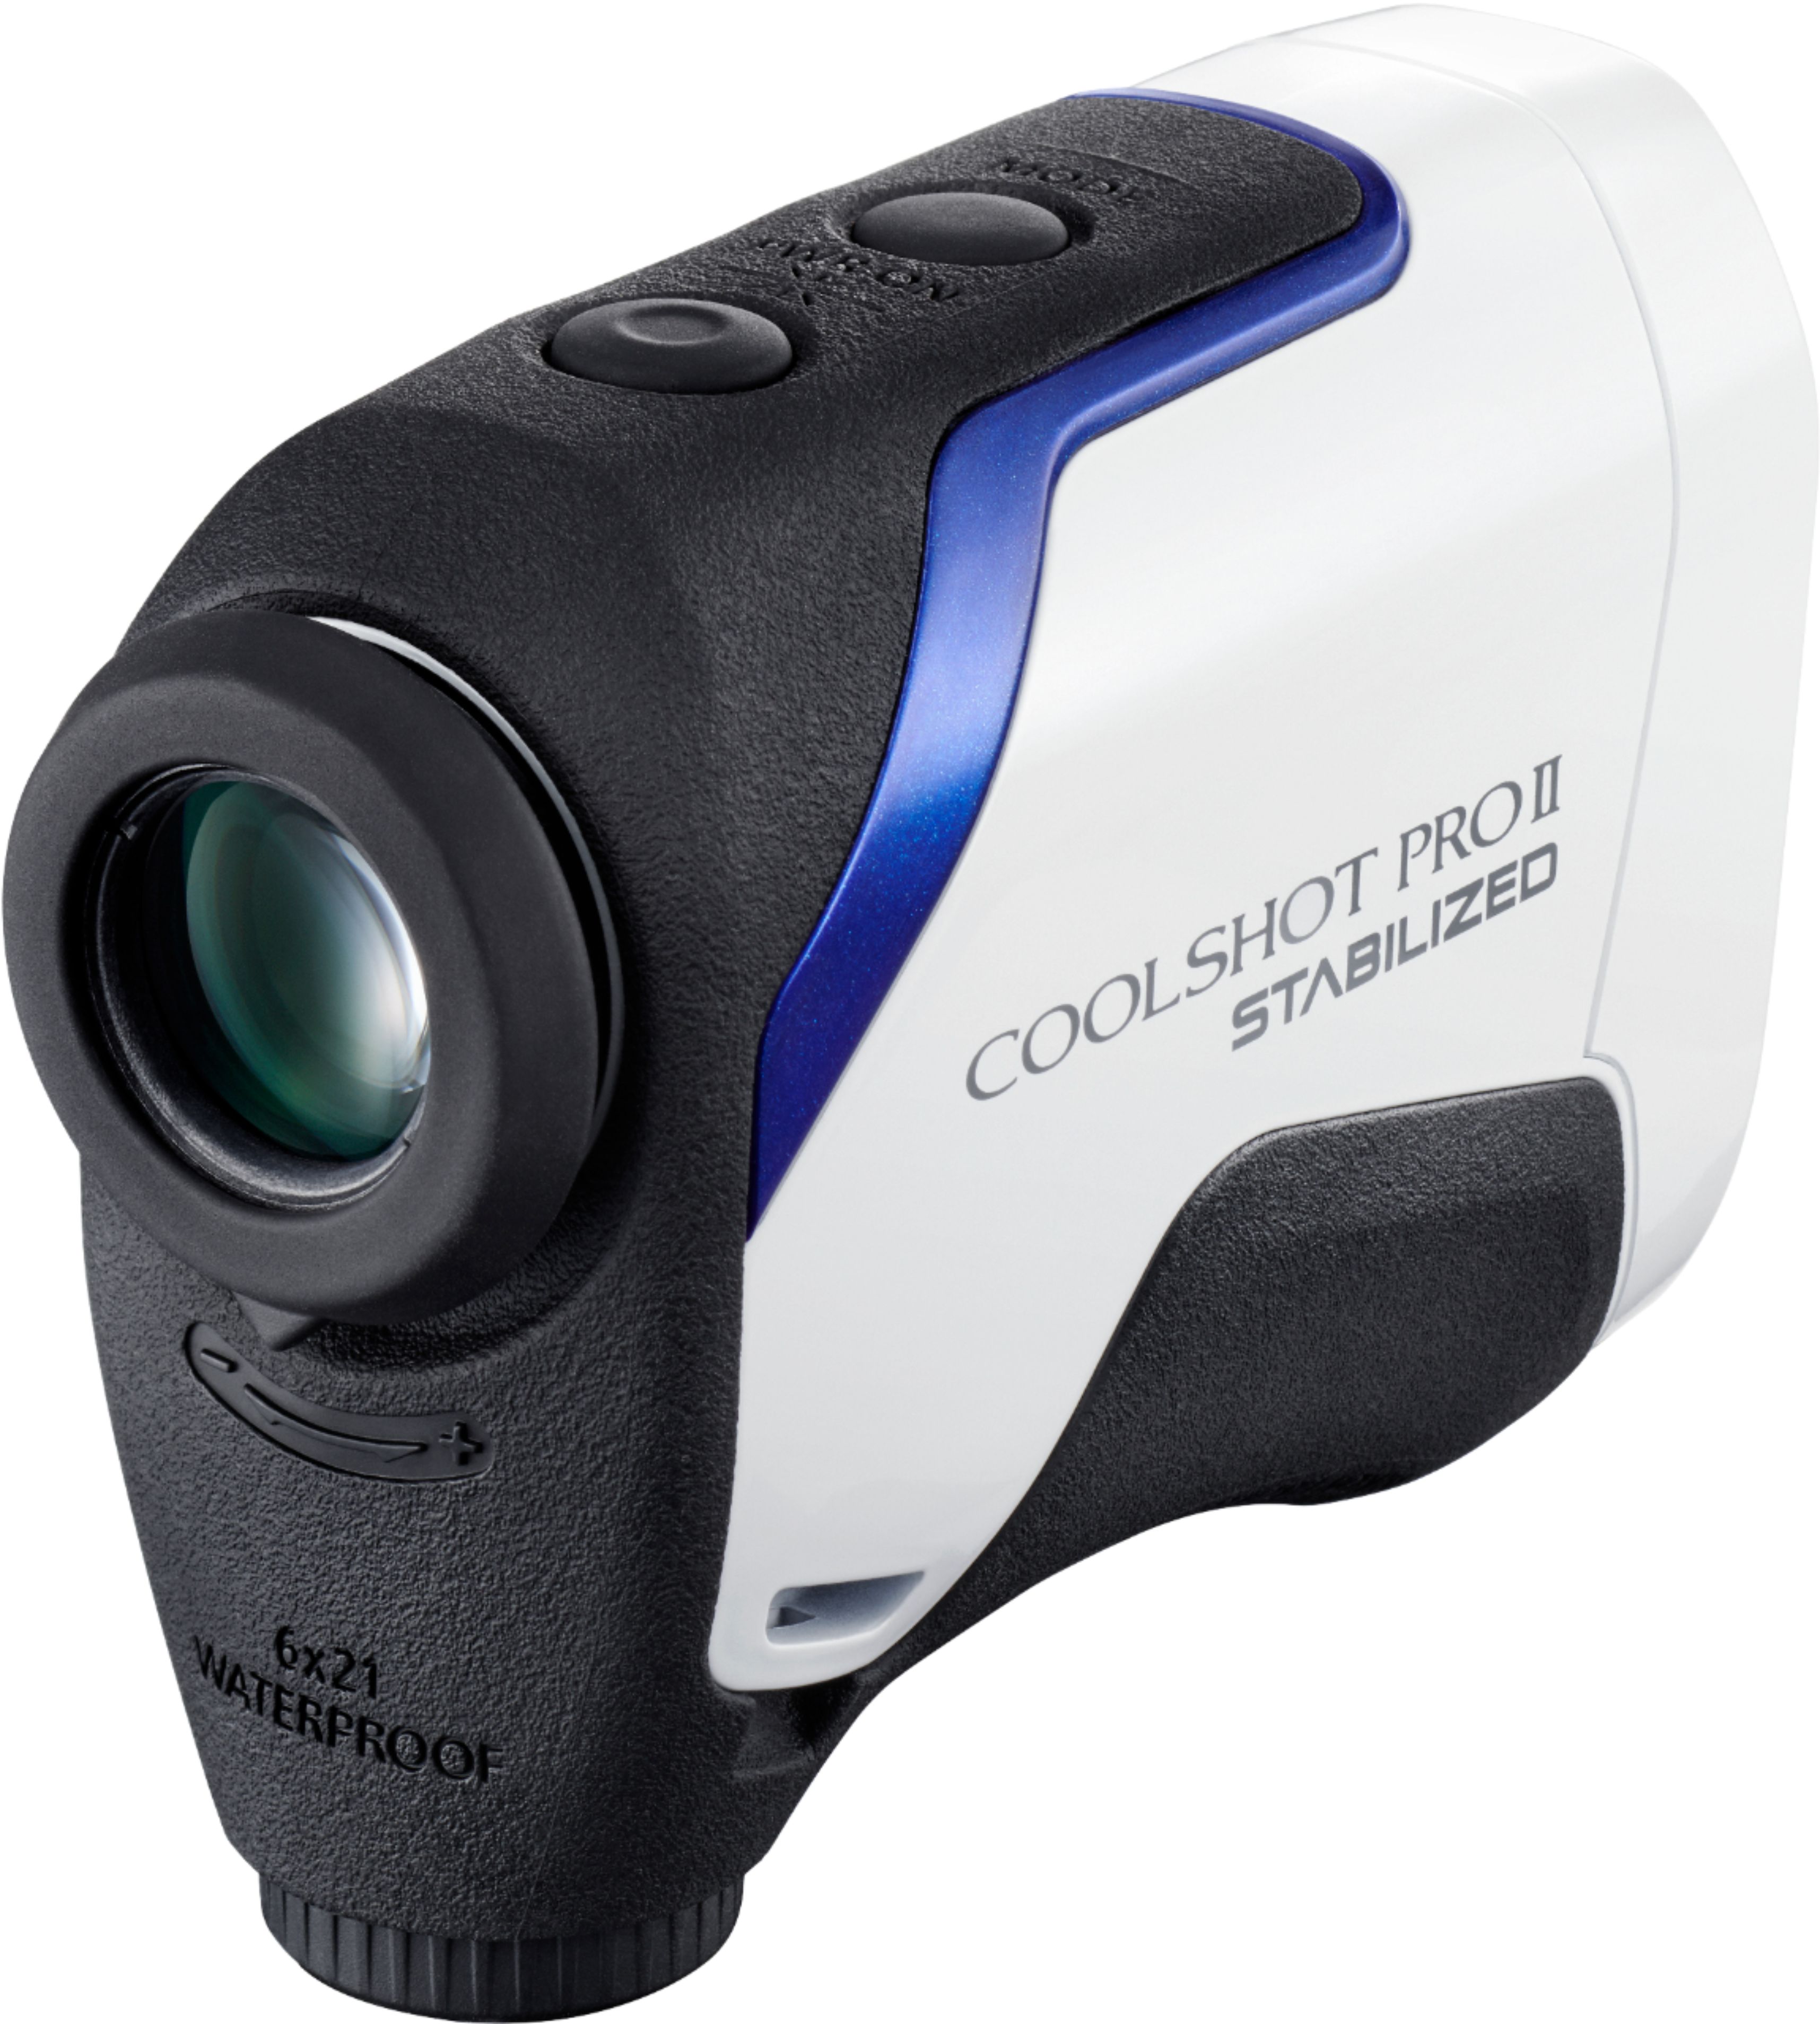 Nikon - Coolshot ProII Stabilized Golf Laser Rangefinder - White/Blue/Black